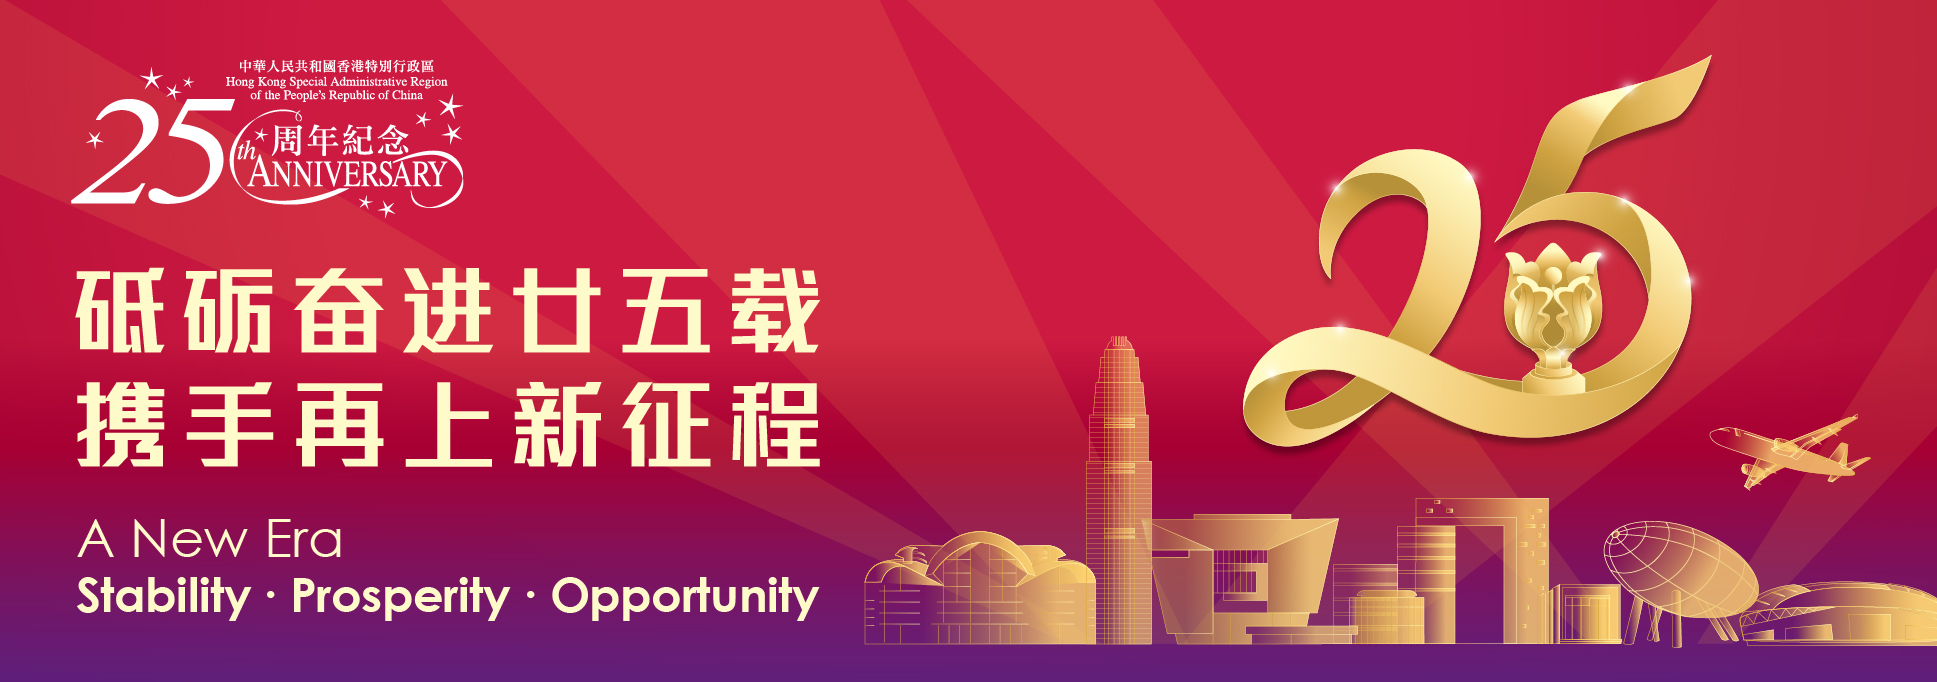 中华人民共和国香港特别行政区成立25周年